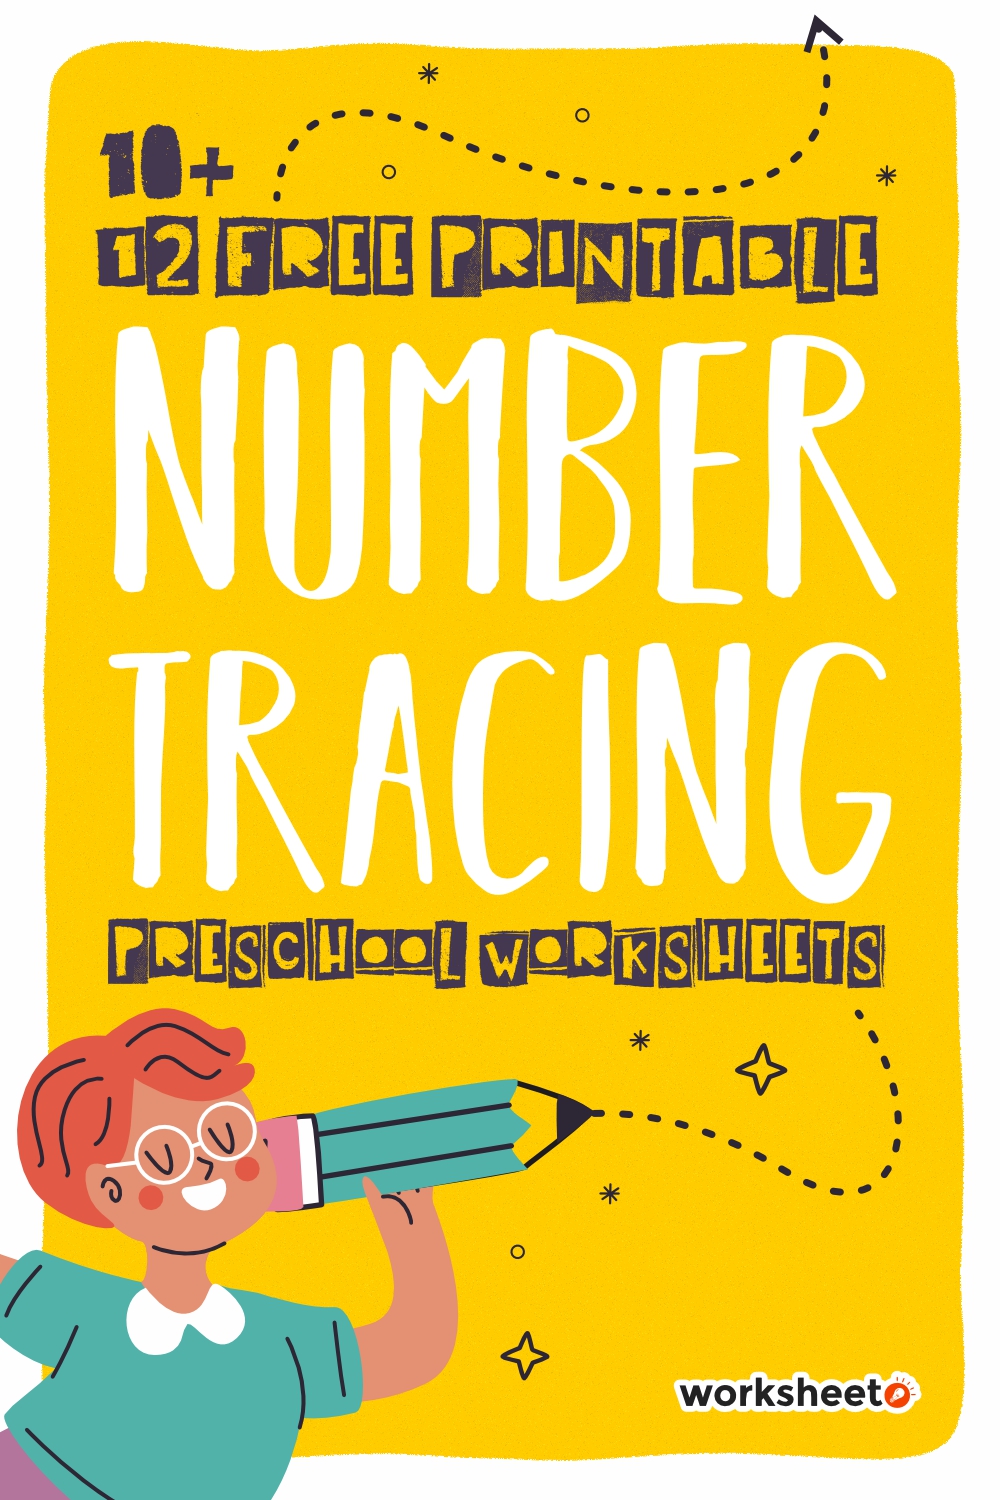 12 Free Printable Number Tracing Preschool Worksheets